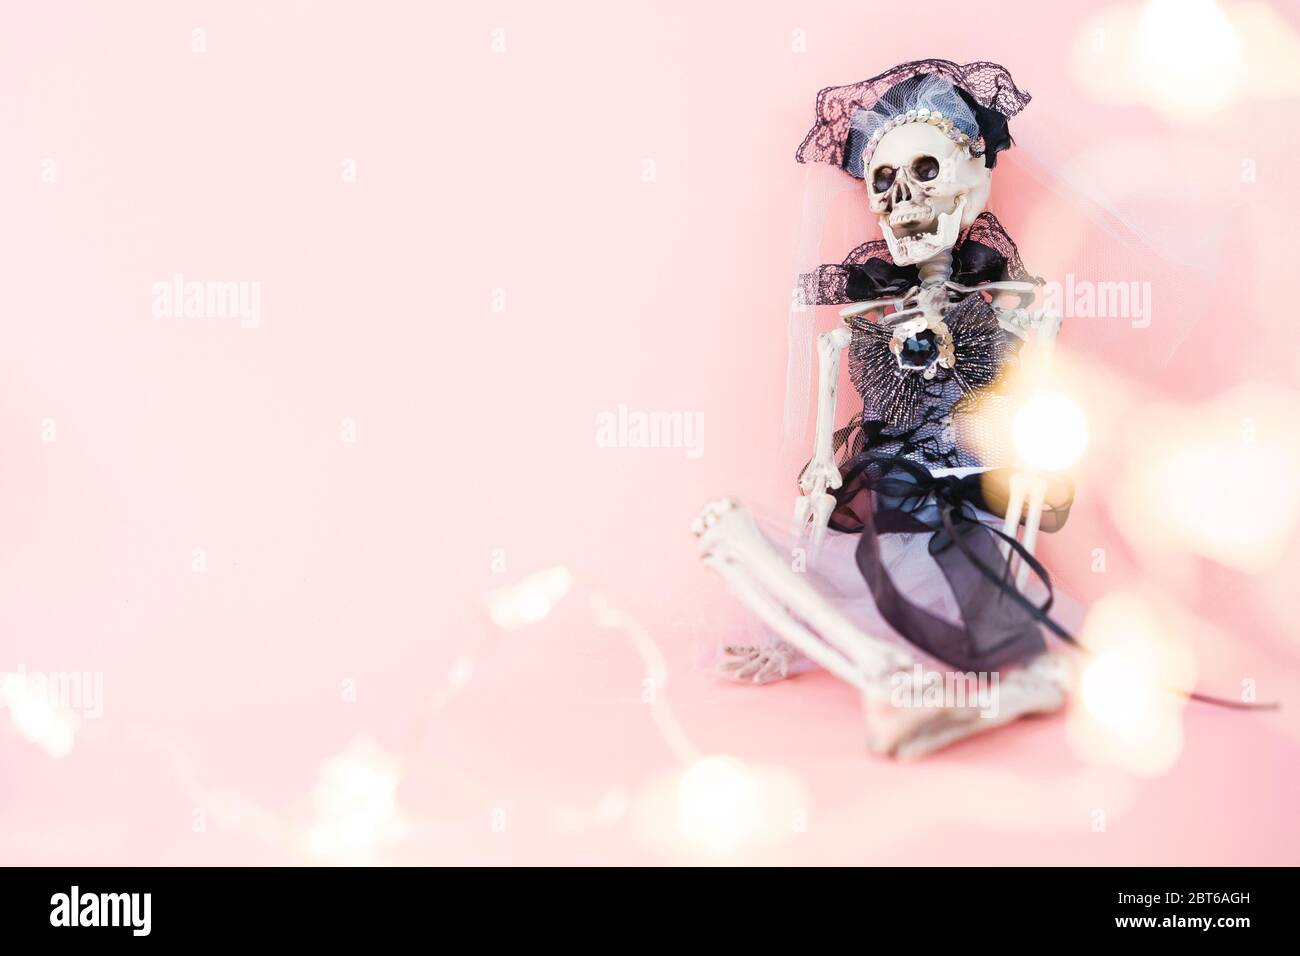 El esqueleto de la novia vestido de novia sentada contra la pared Foto de stock